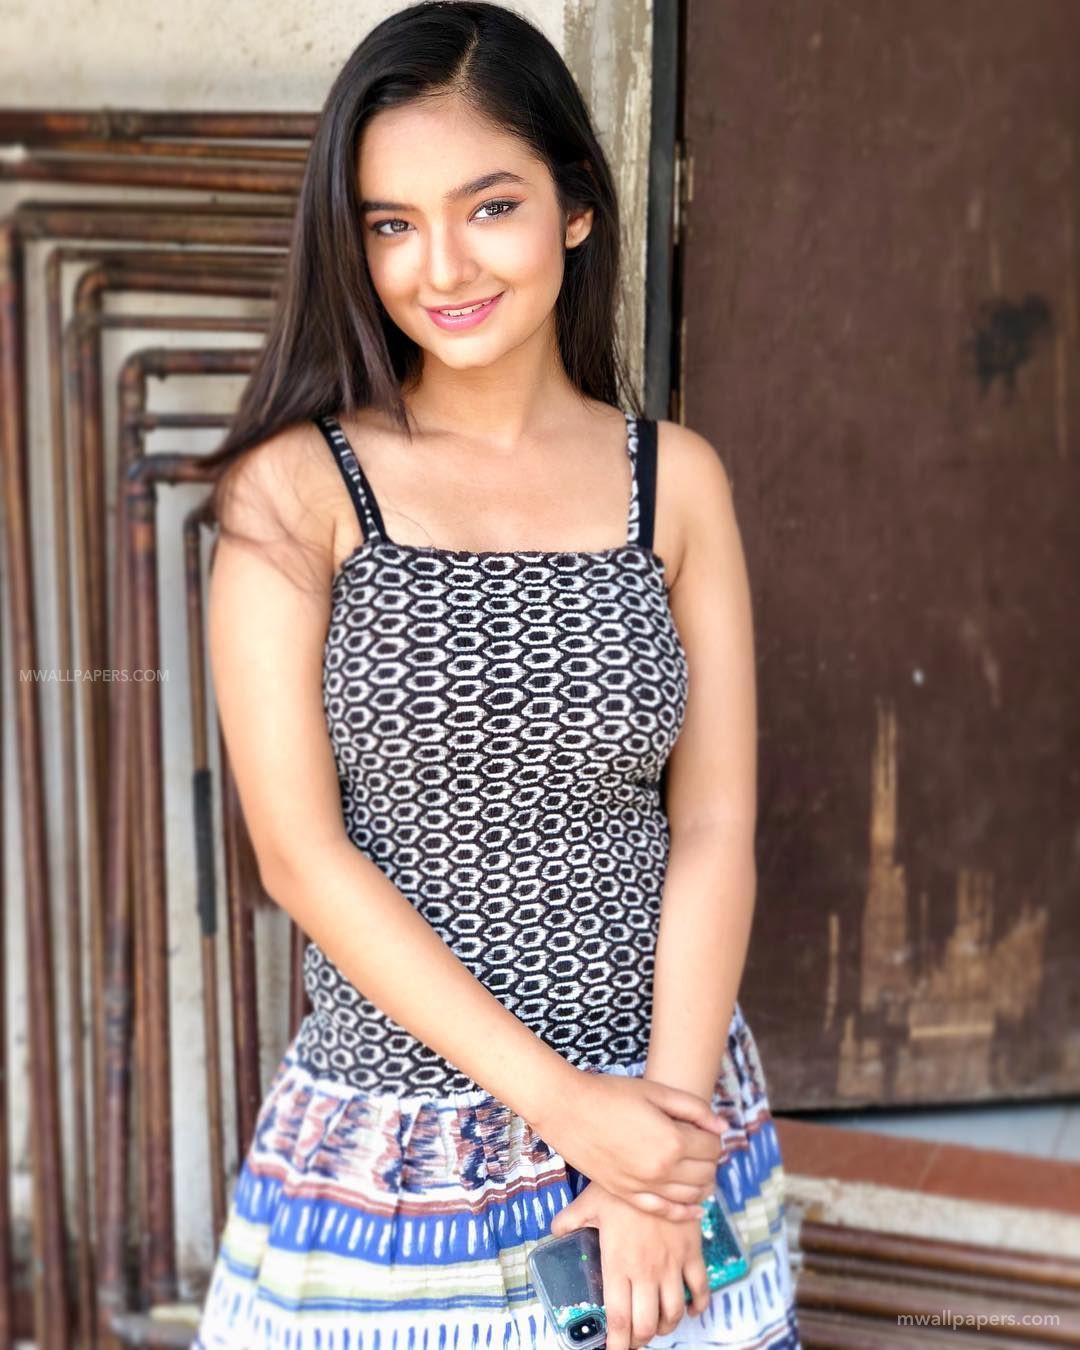 Indian Teen Actress Hot Pictures Anushka Sen Wallpaper Anushka Sen 